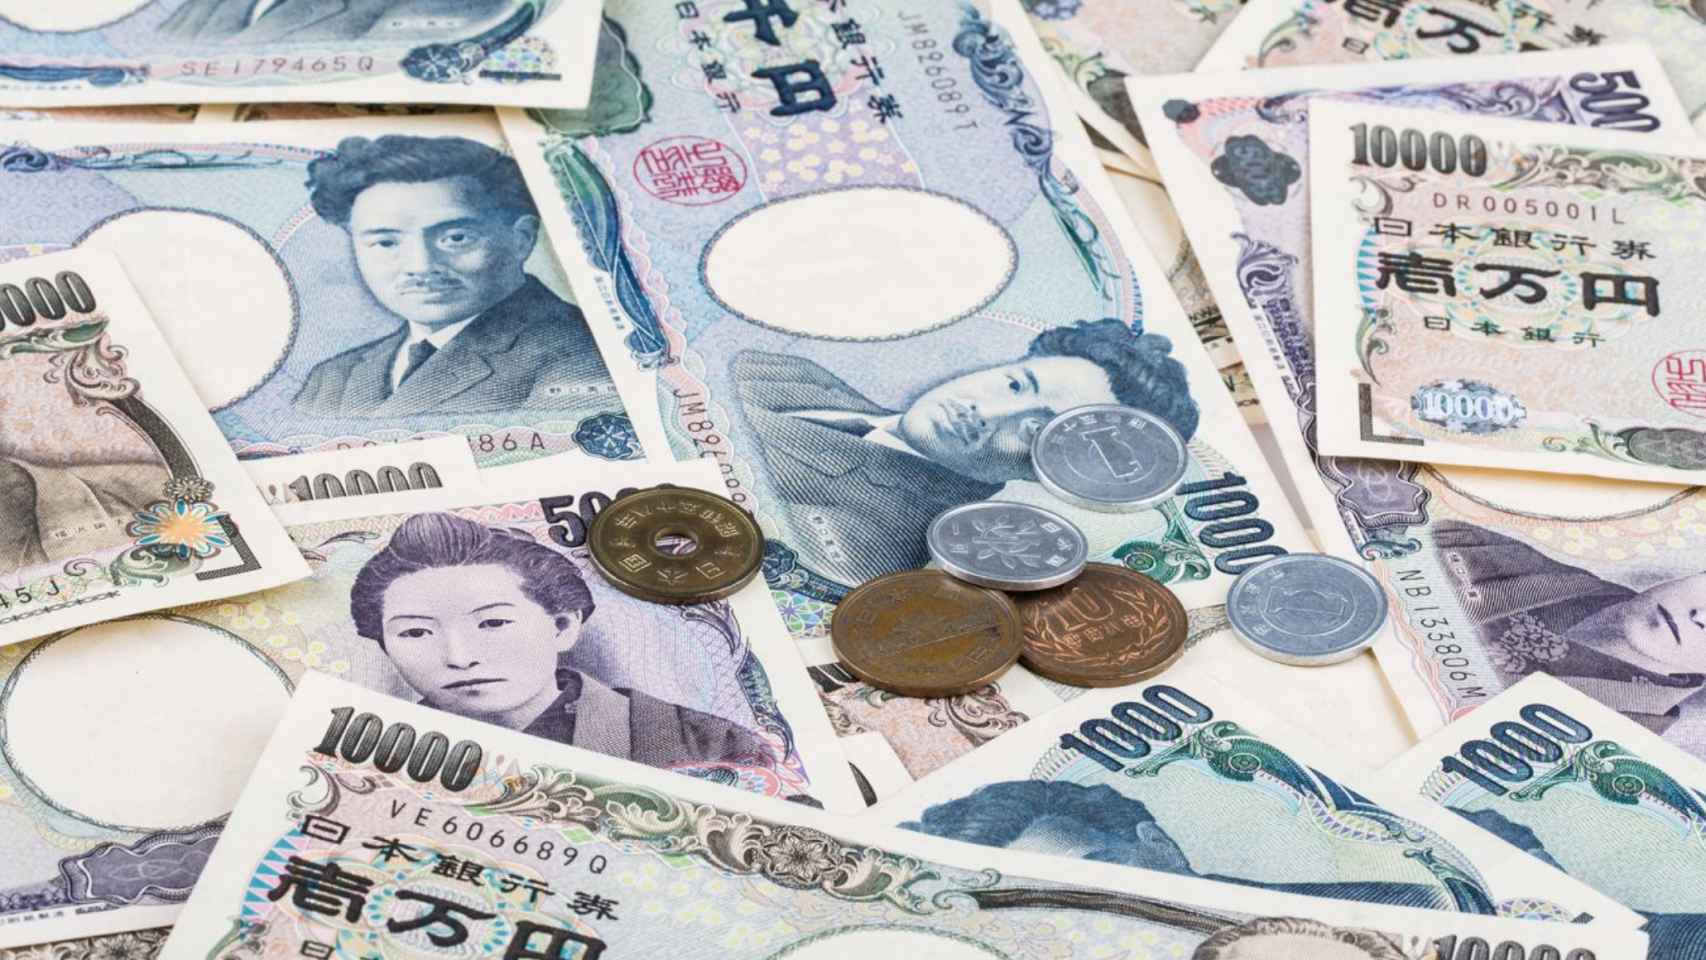 Billetes y monedas japonesas.